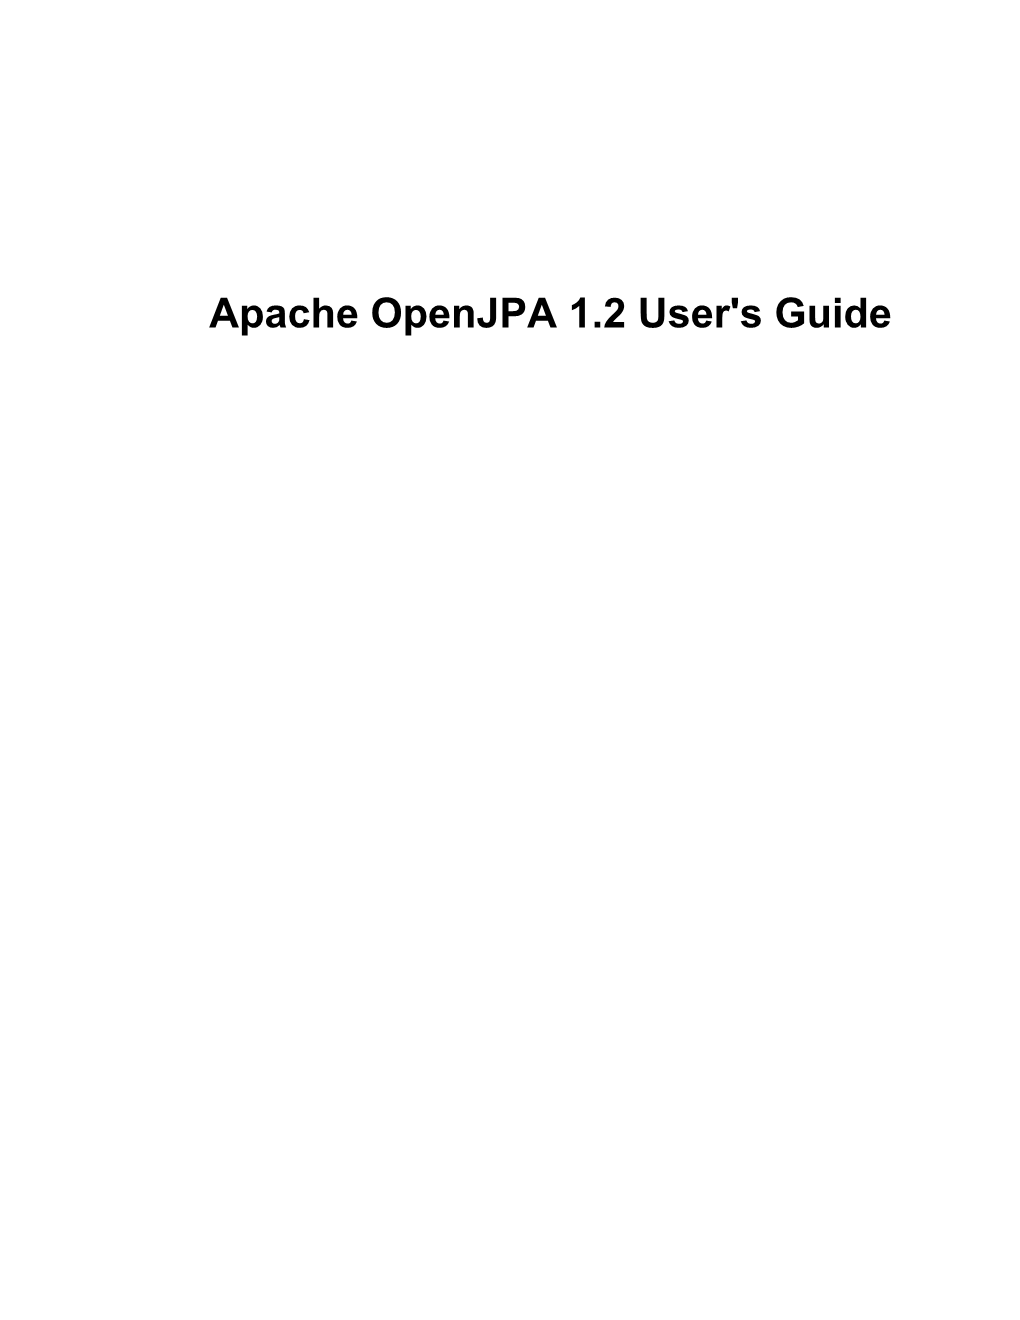 Apache Openjpa 1.2 User's Guide Apache Openjpa 1.2 User's Guide